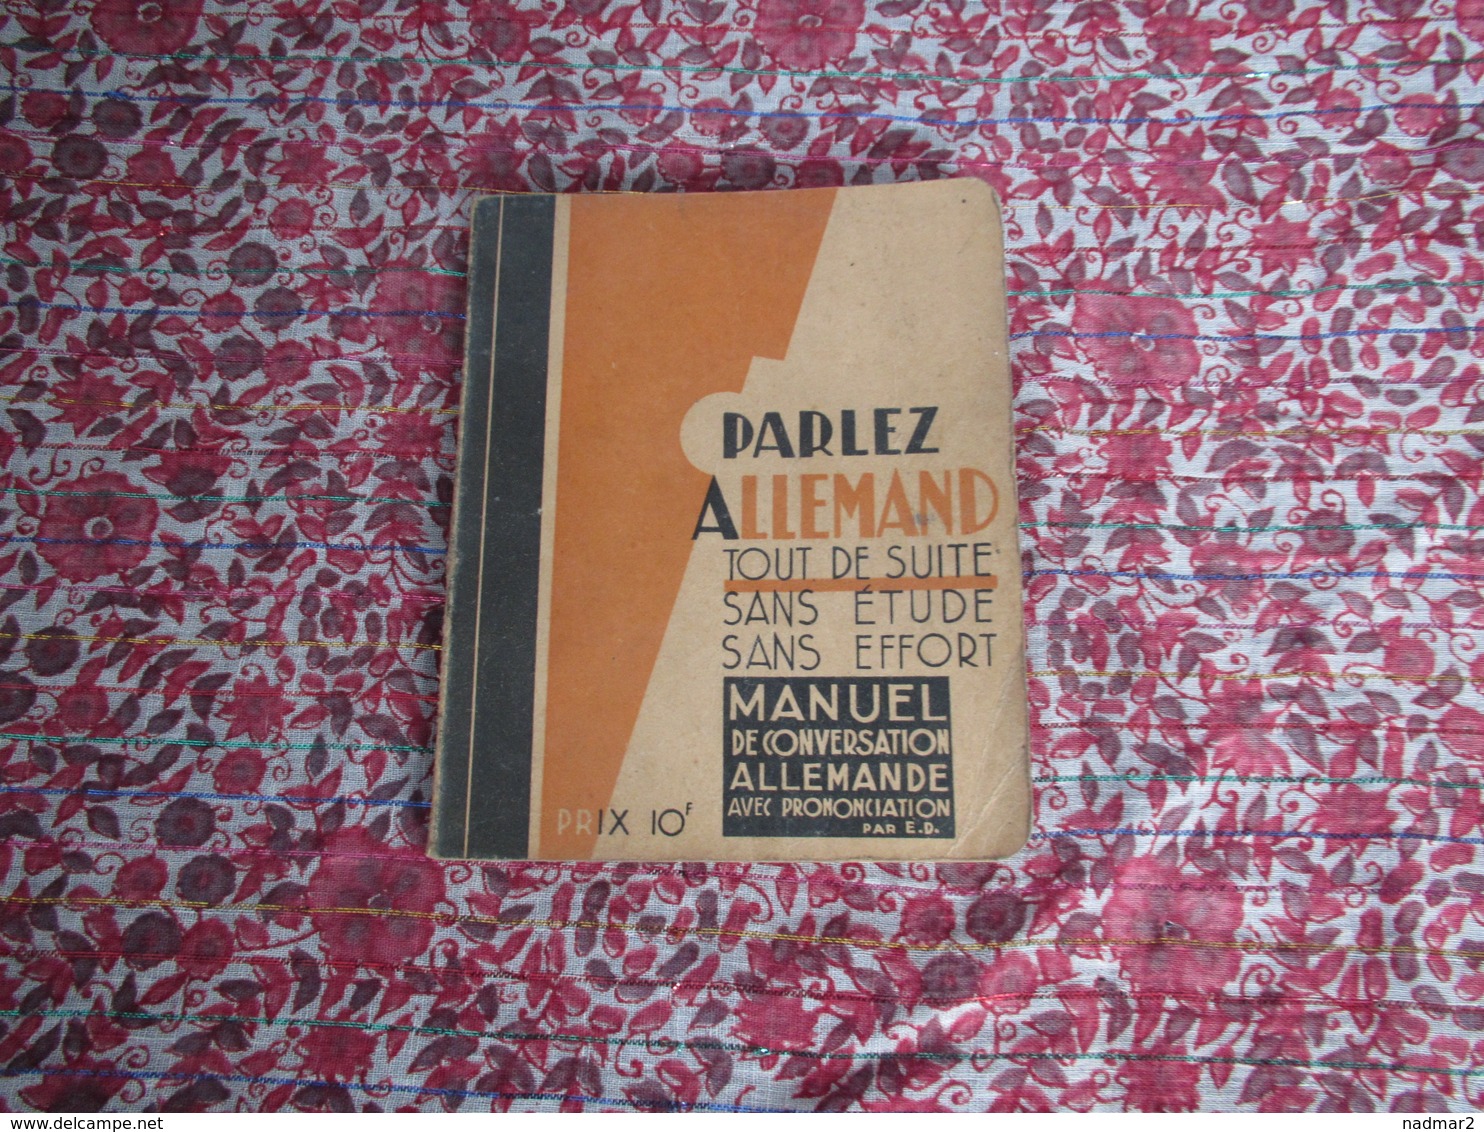 Parlez Allemand Tout De Suite: Manuel De Conversation Edmond Dujardin Lille 1939 1945 - 1939-45